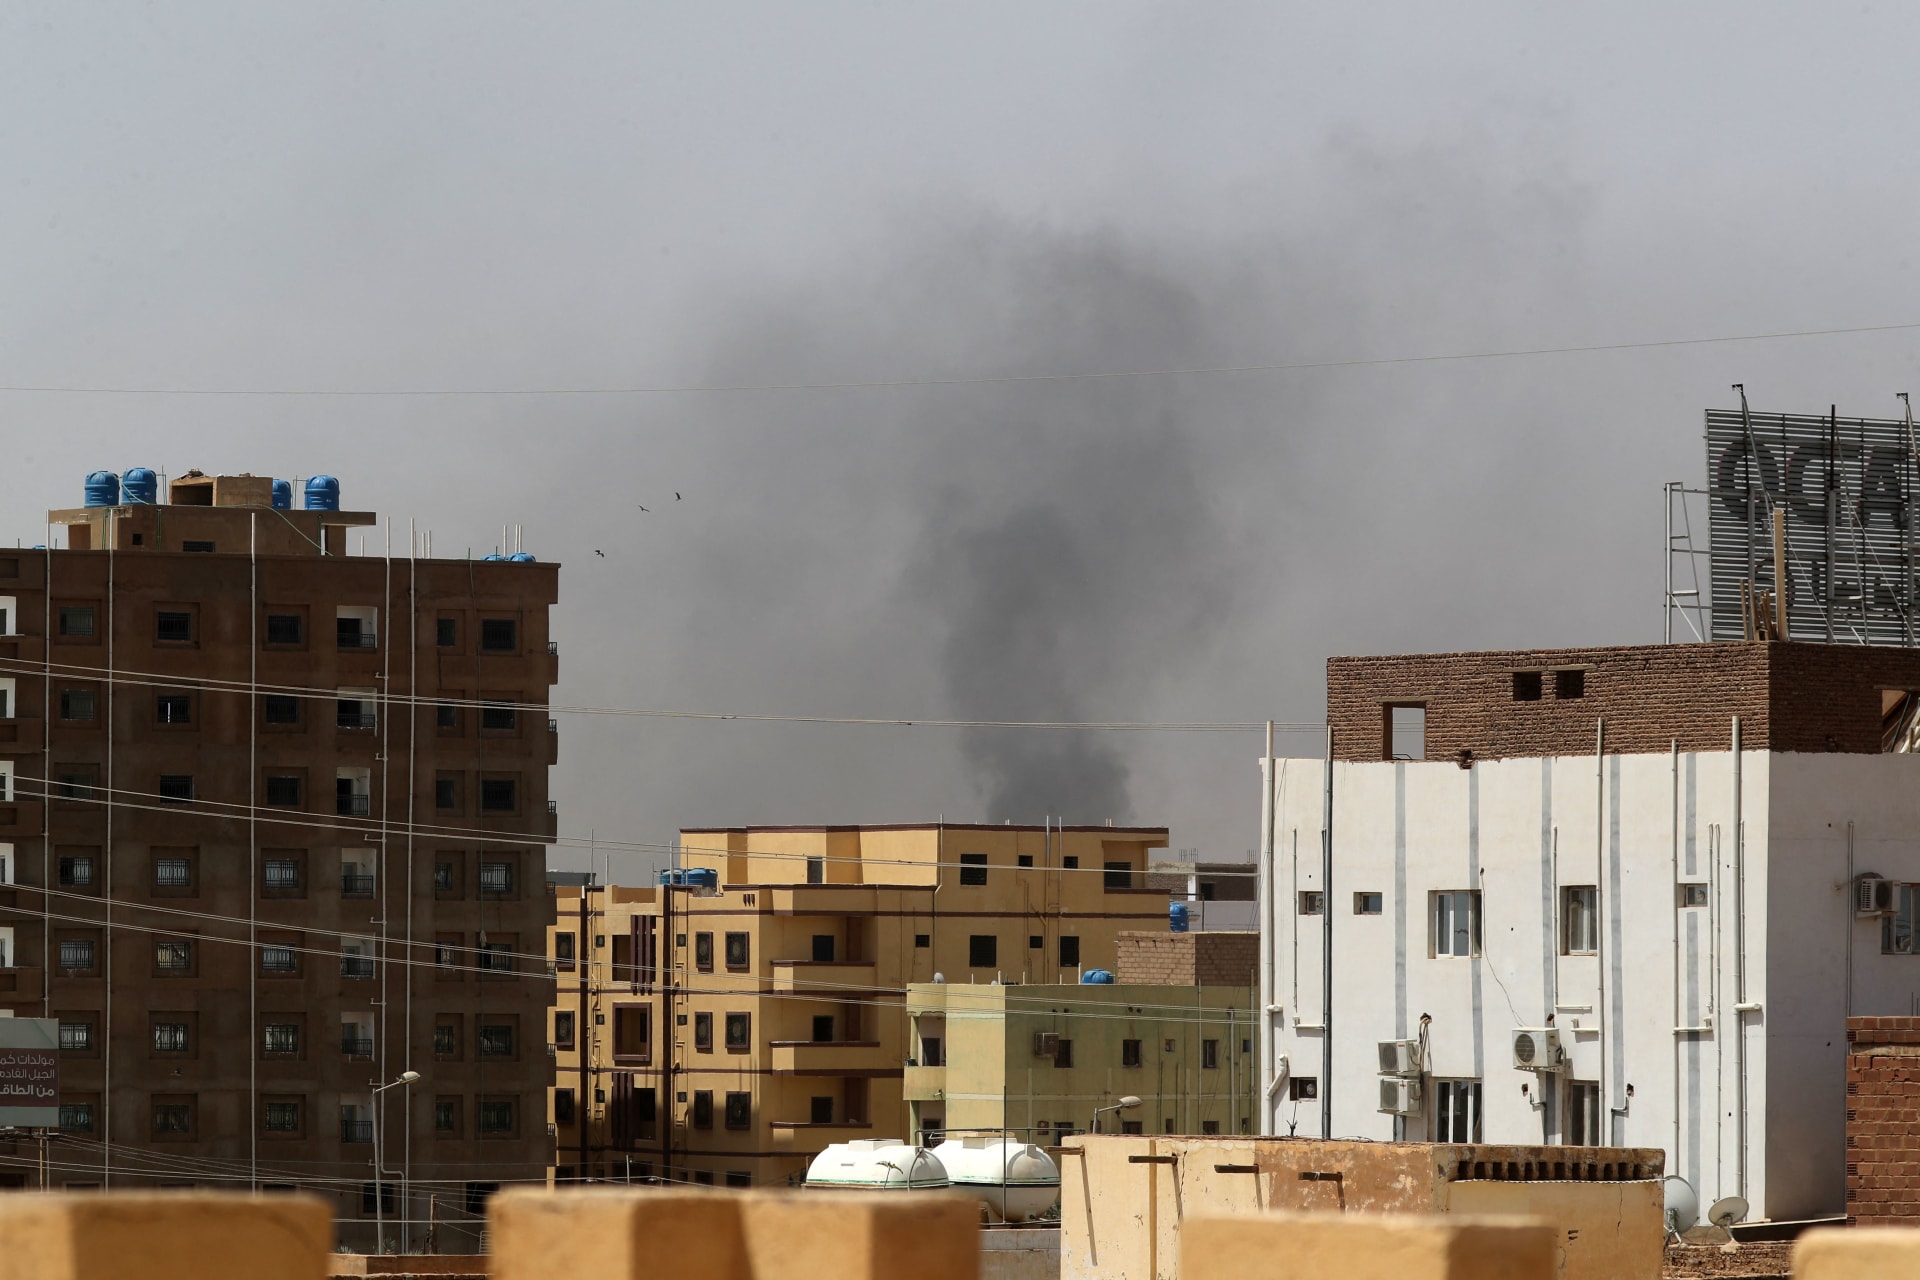 إطلاق نار كثيف في الخرطوم.. وقوات الدعم السريع تعلن هجوم الجيش السوداني عليها